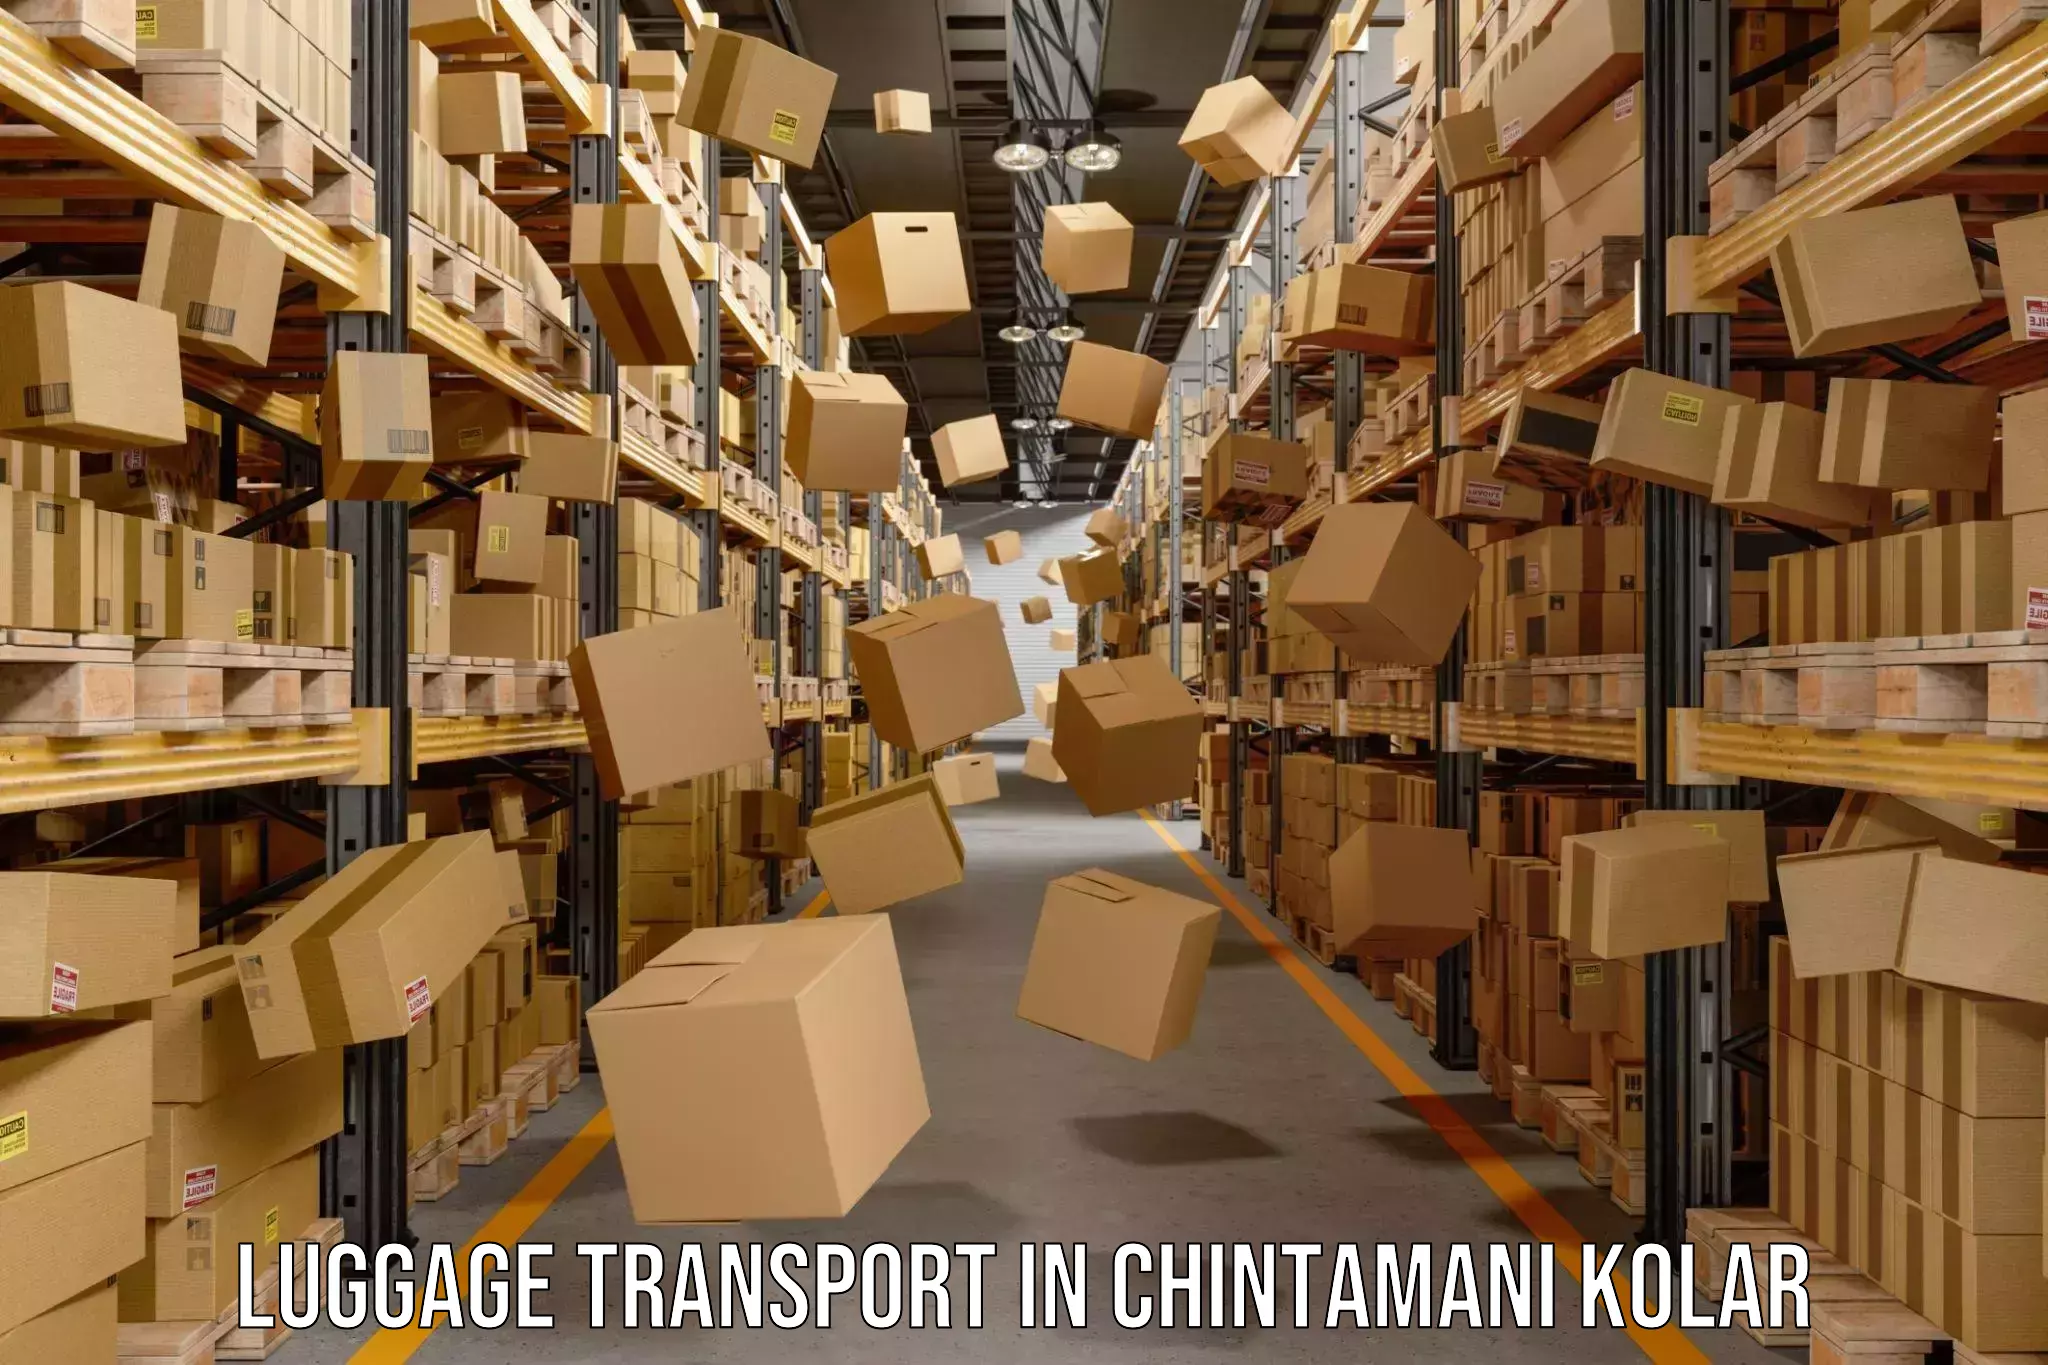 Baggage transport services in Chintamani Kolar